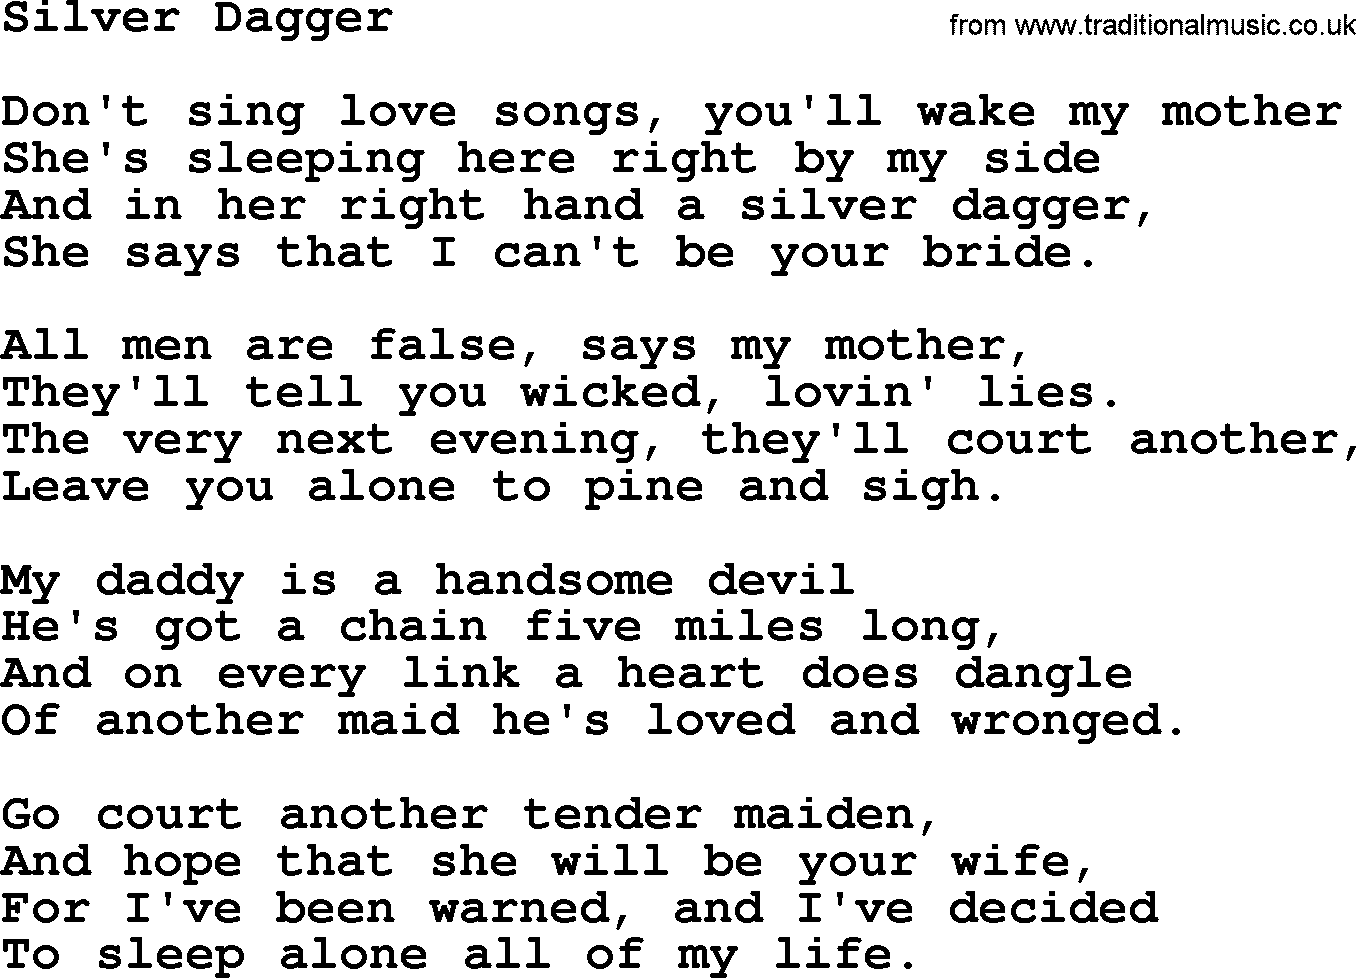 Joan Baez song Silver Dagger, lyrics